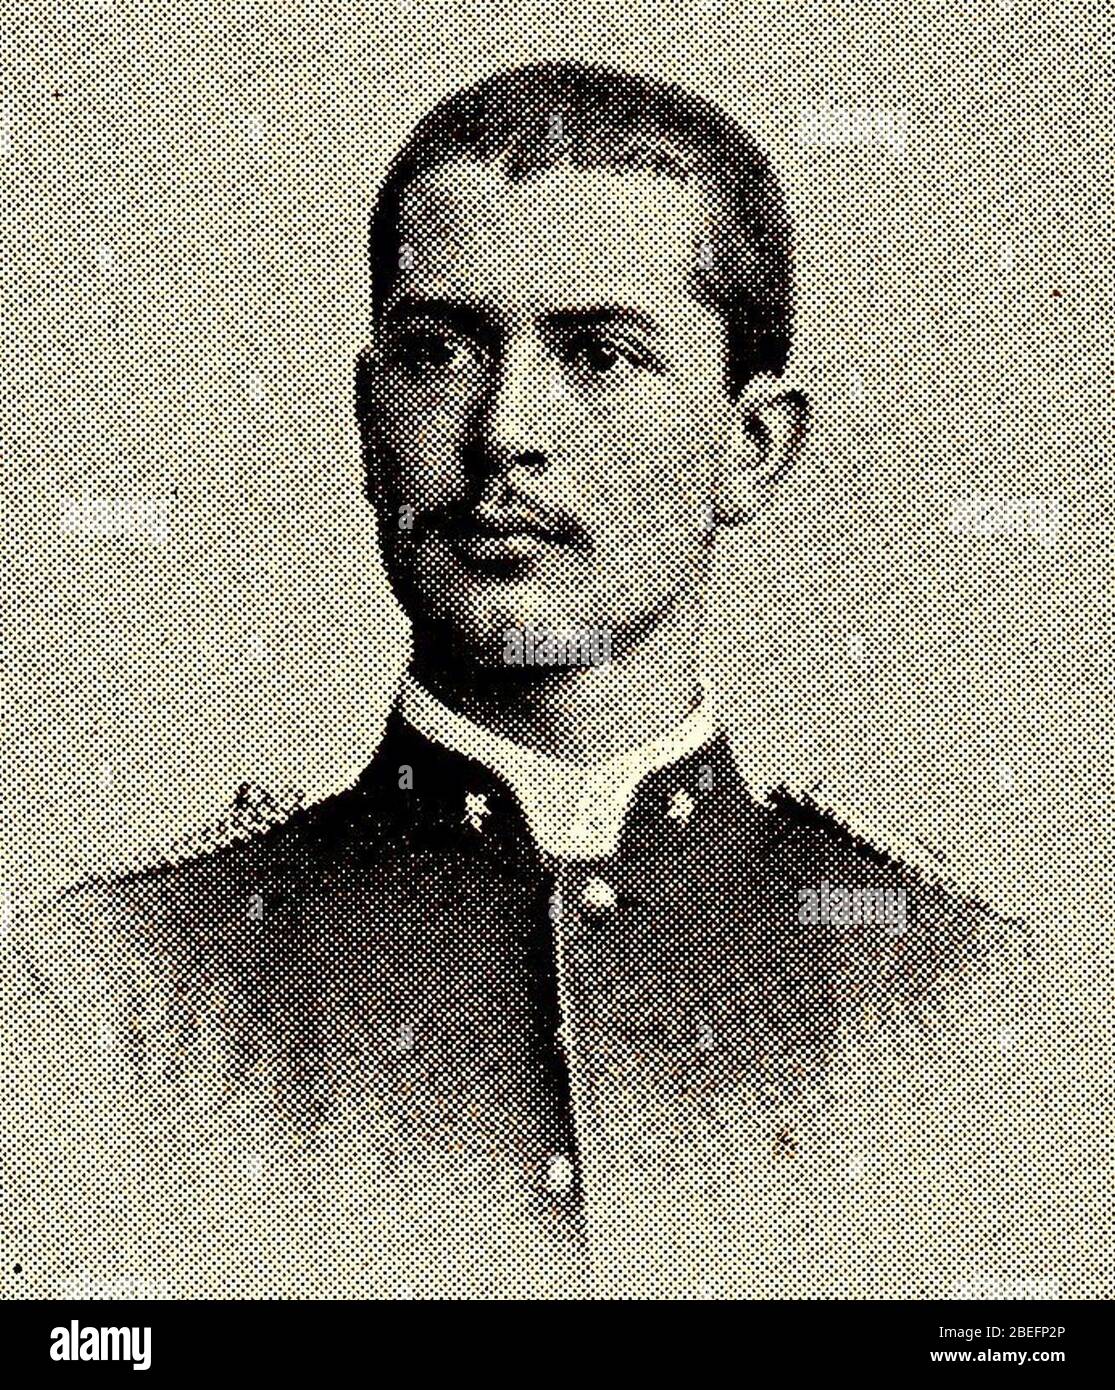 Heijden, HAC van der. Tweede luitant infanterie. Gesneuveld 18 novembre 1894. Banque D'Images